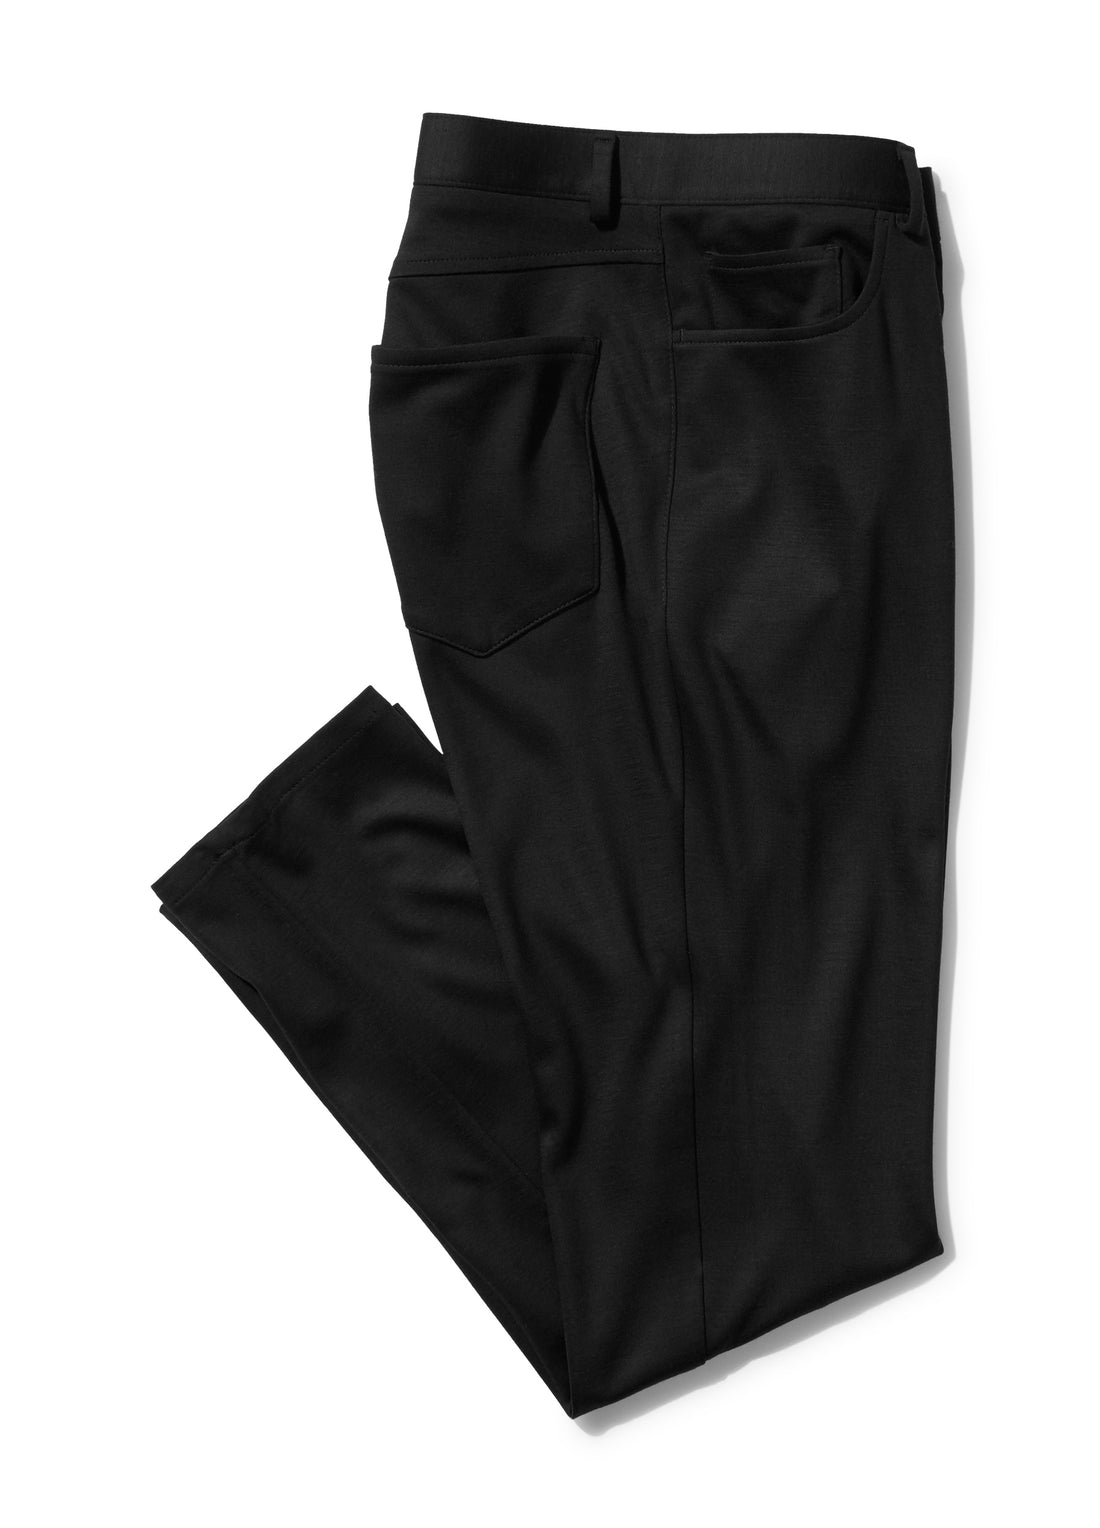 Black "Elite-Tech" 5-Pocket Pants